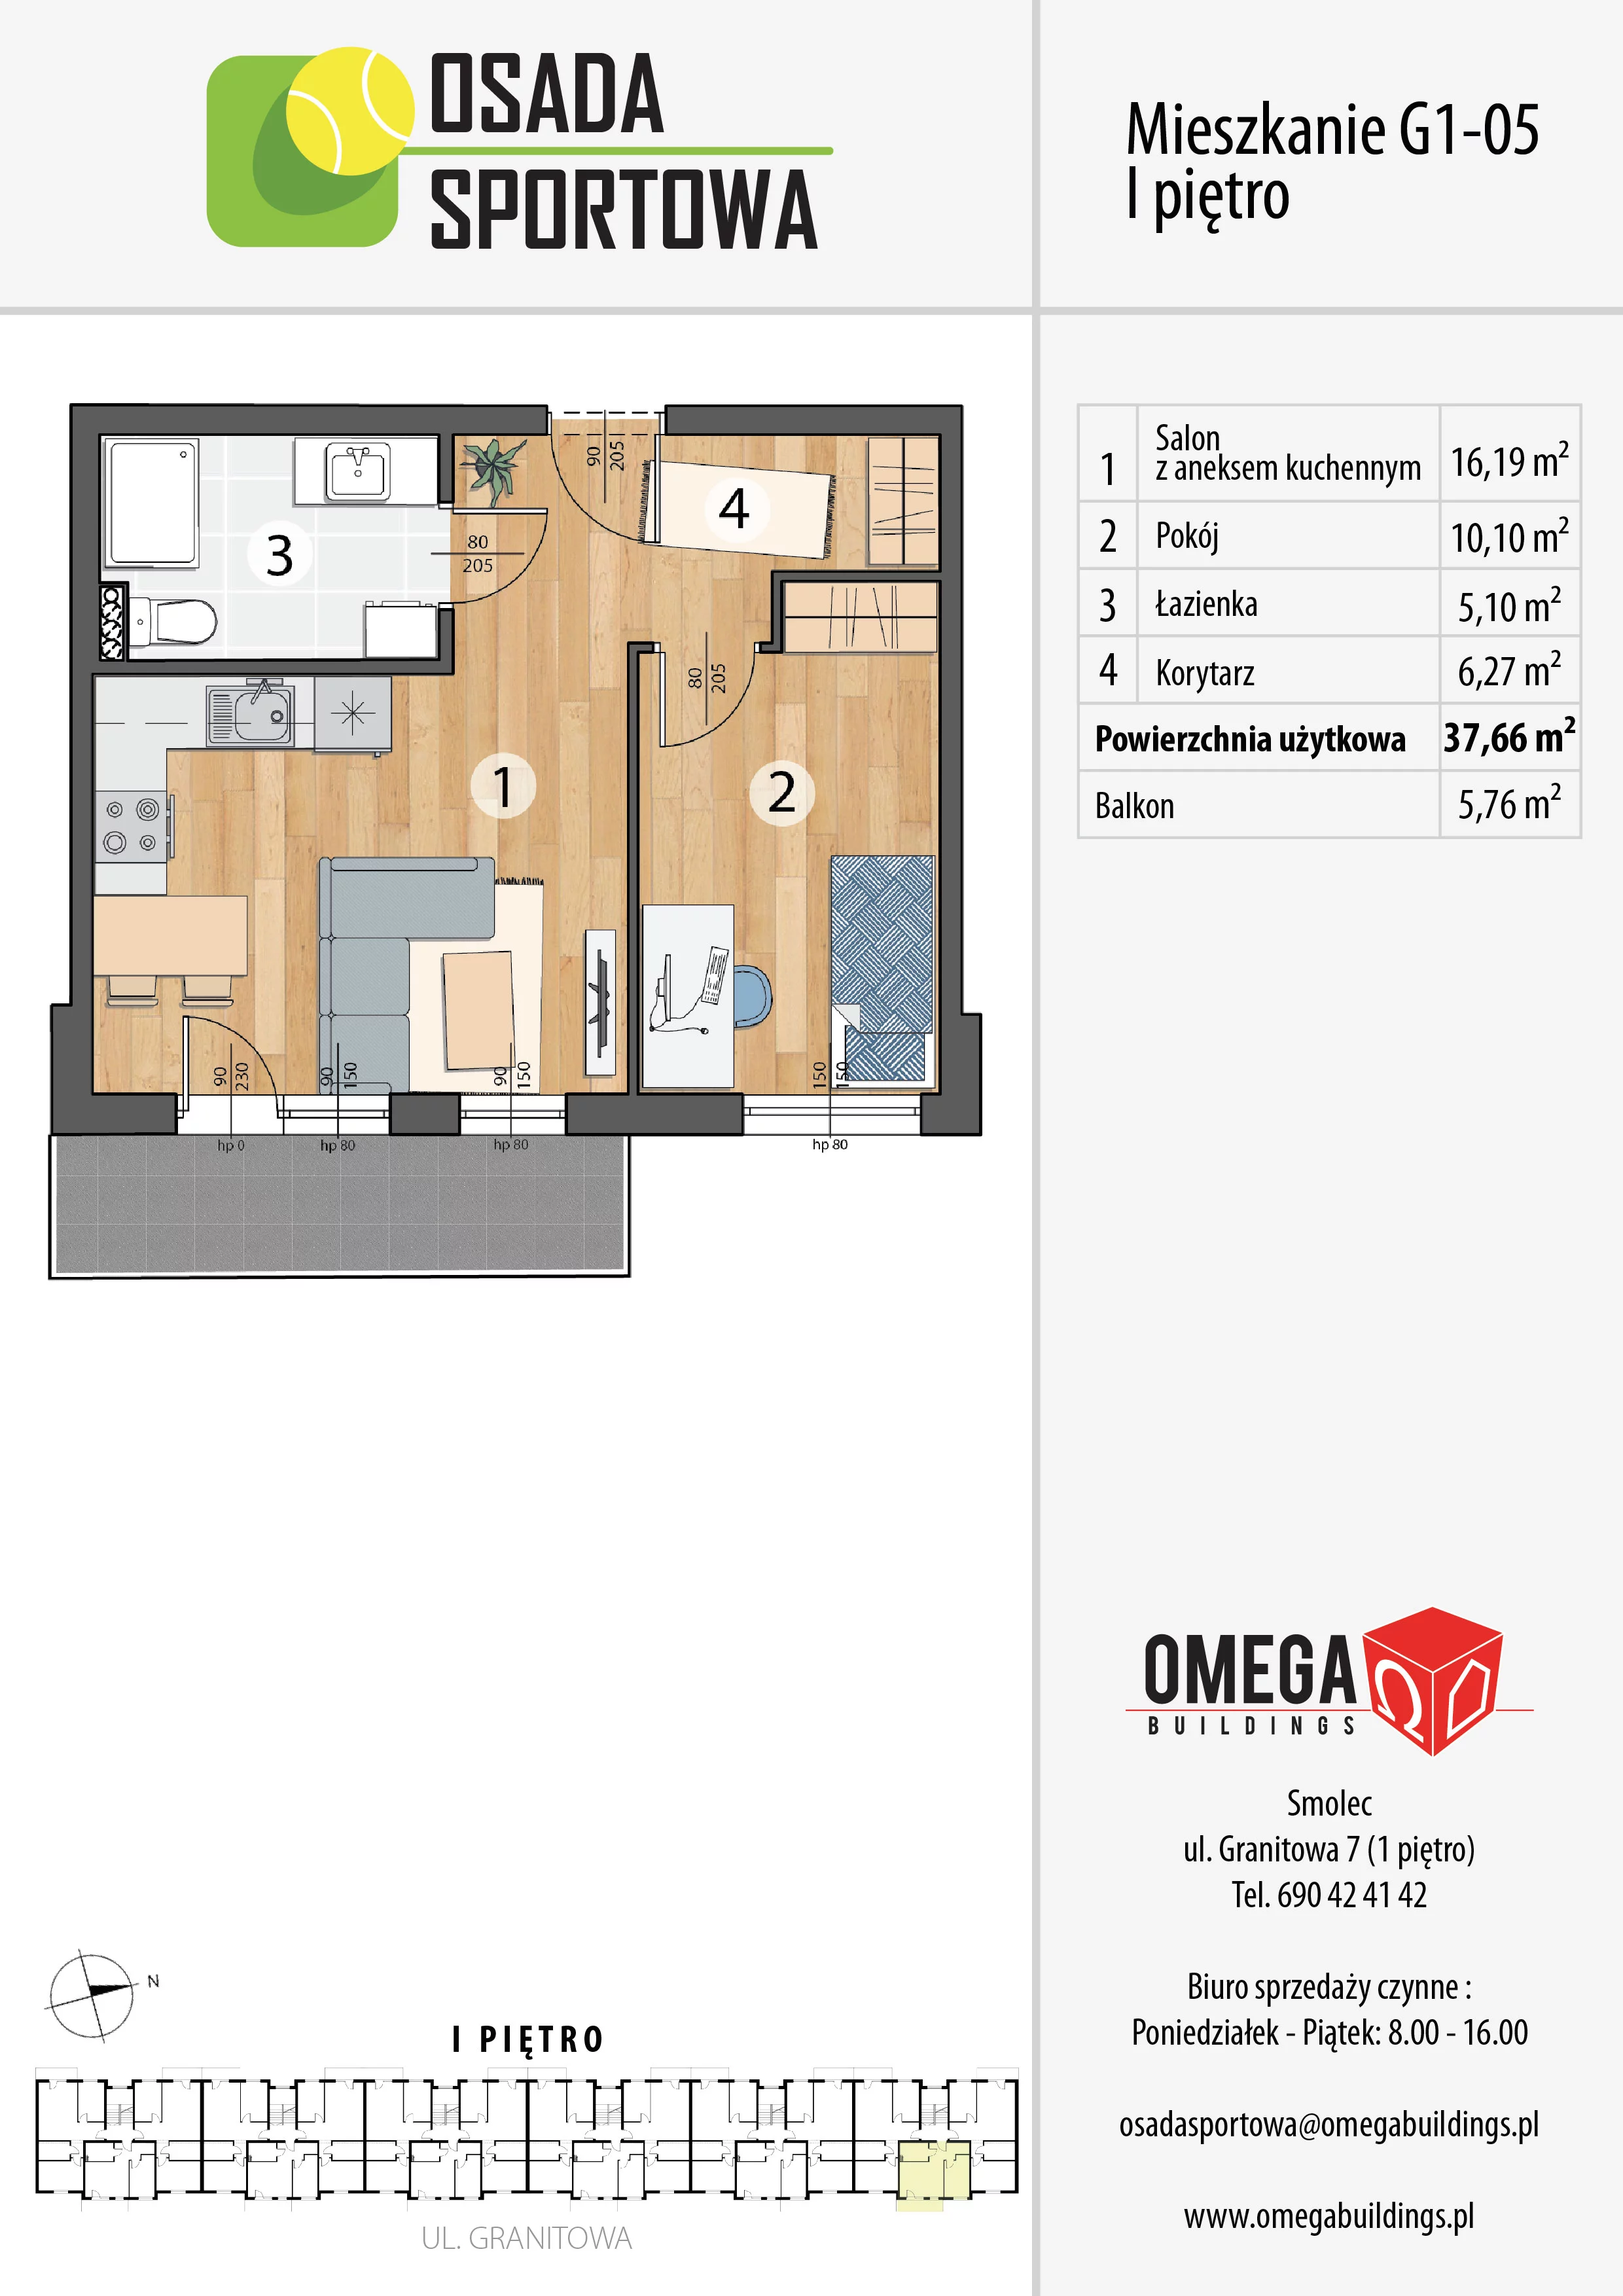 Mieszkanie 37,66 m², piętro 1, oferta nr G1-05, Osada Sportowa Budynek G, Smolec, ul. Granitowa 52-62